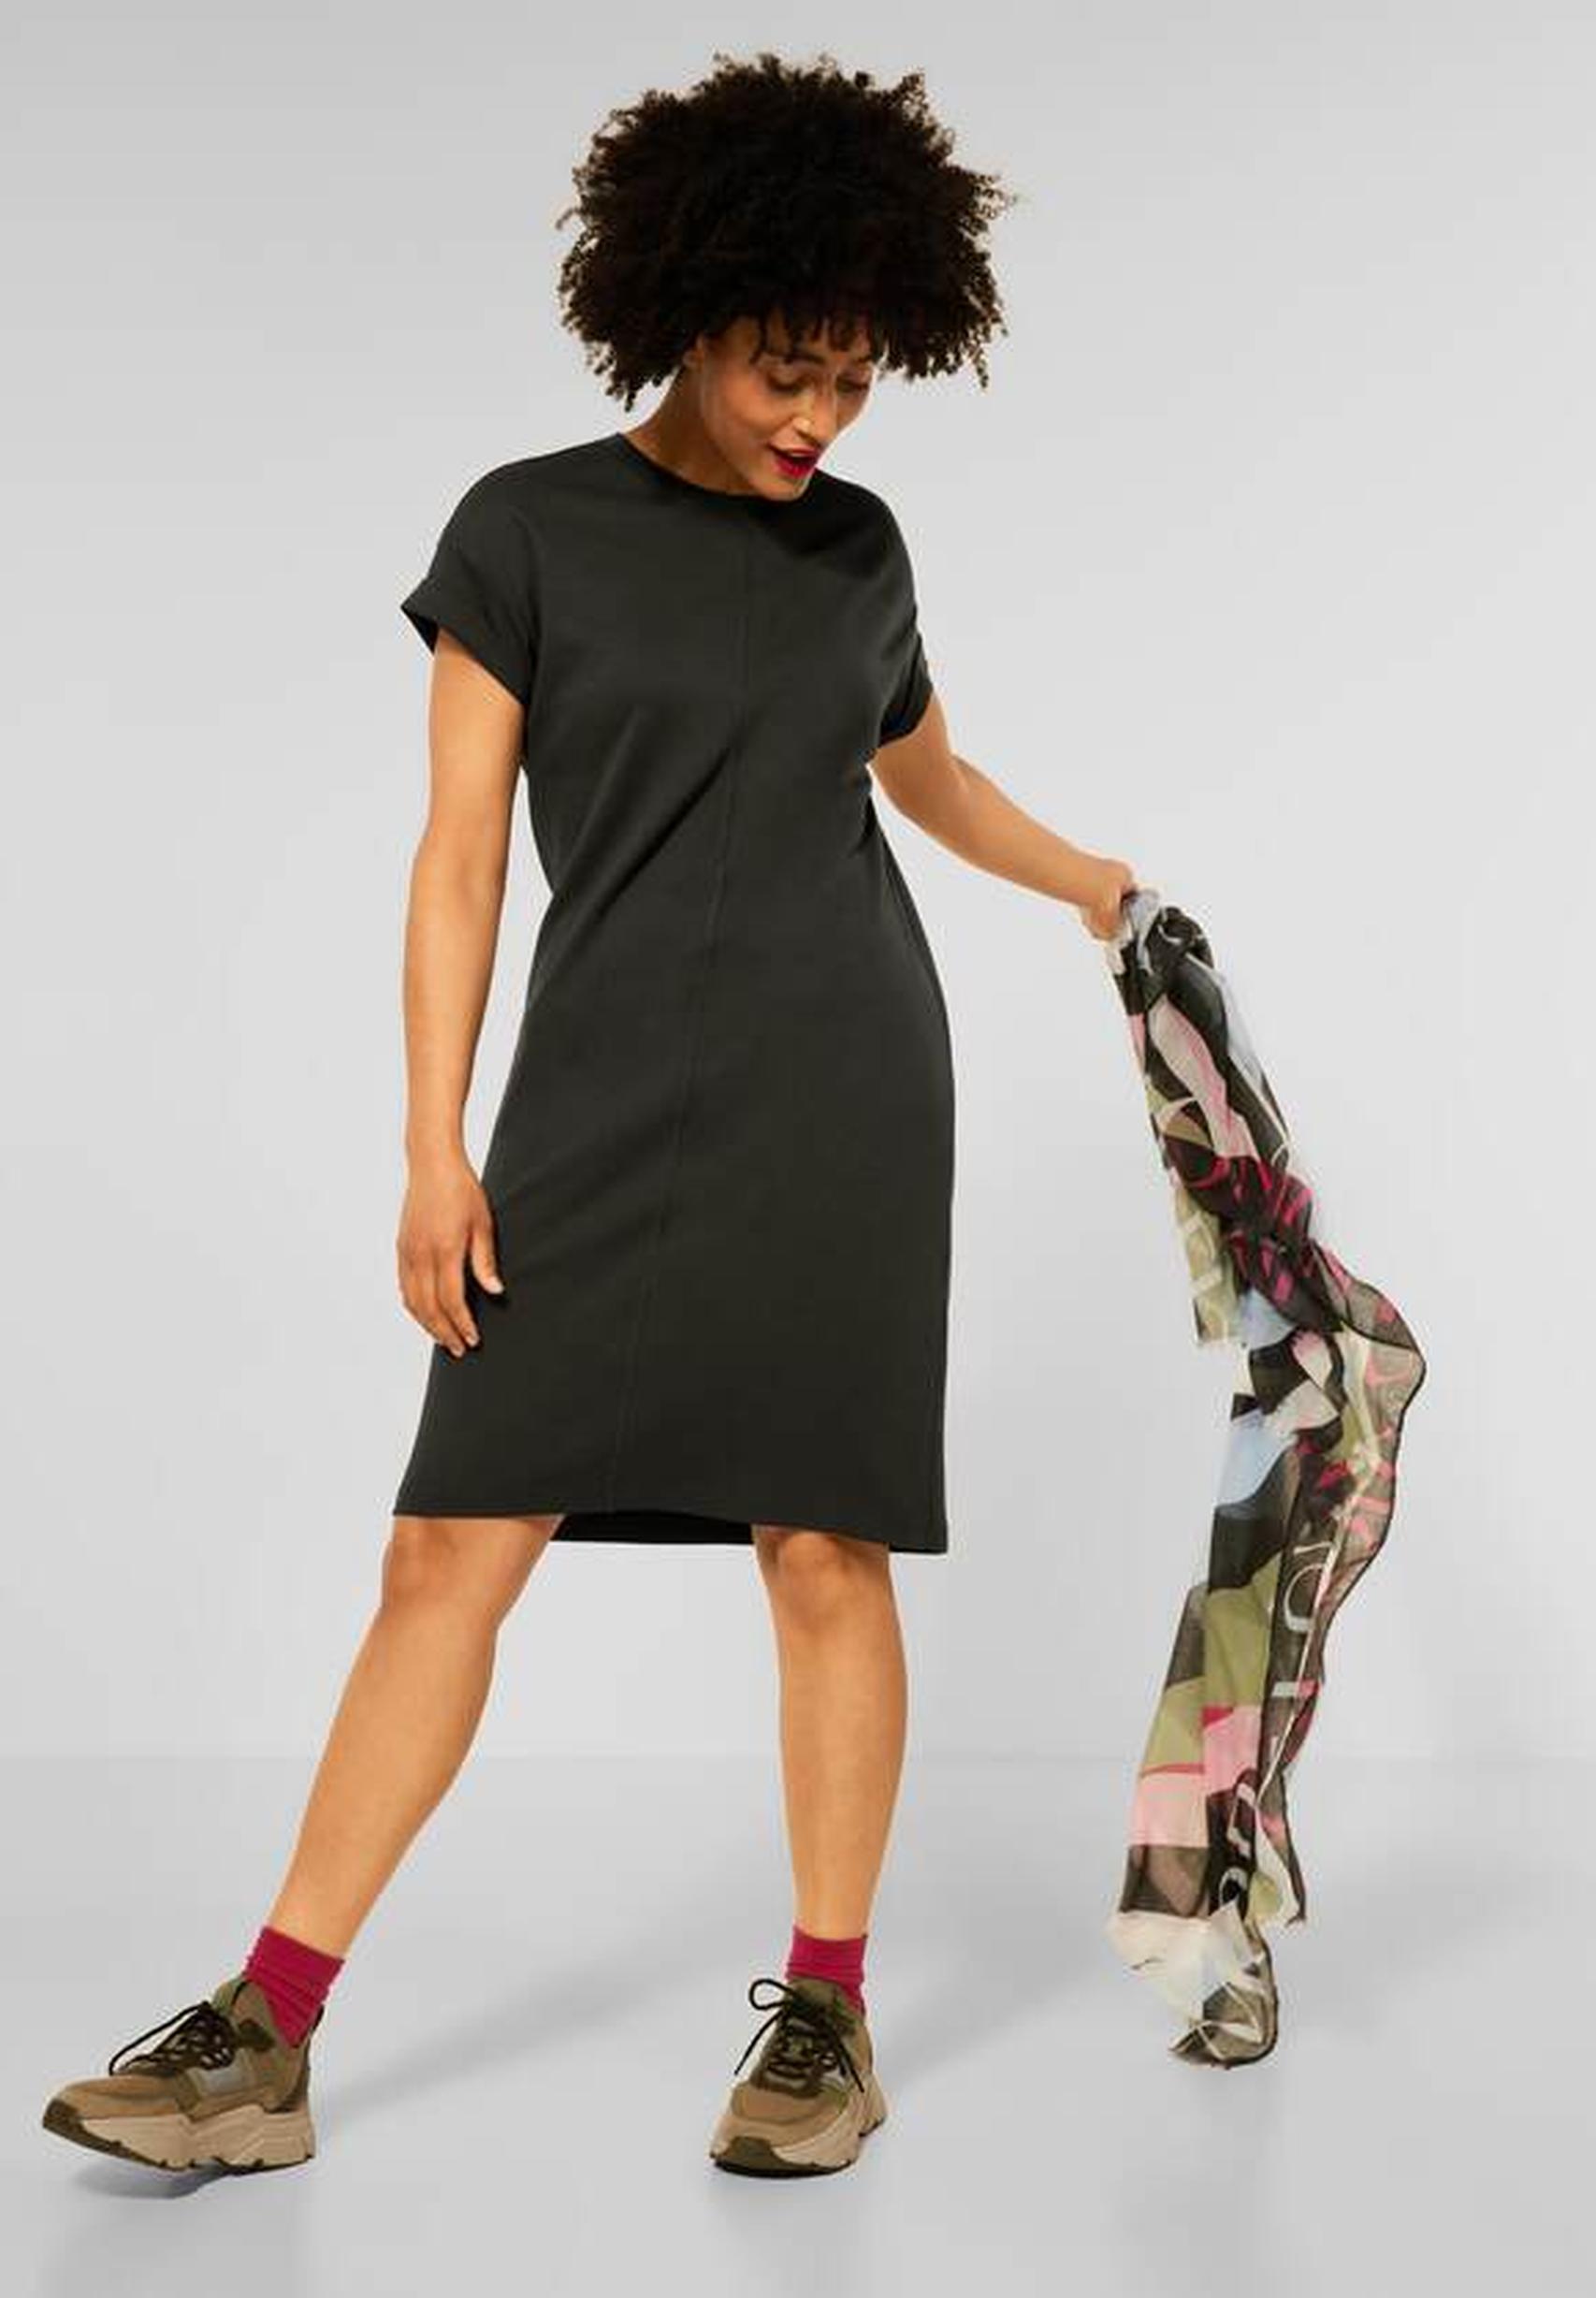 Modisches Jerseykleid aus der Kollektion von Street One in bassy olive -  143166